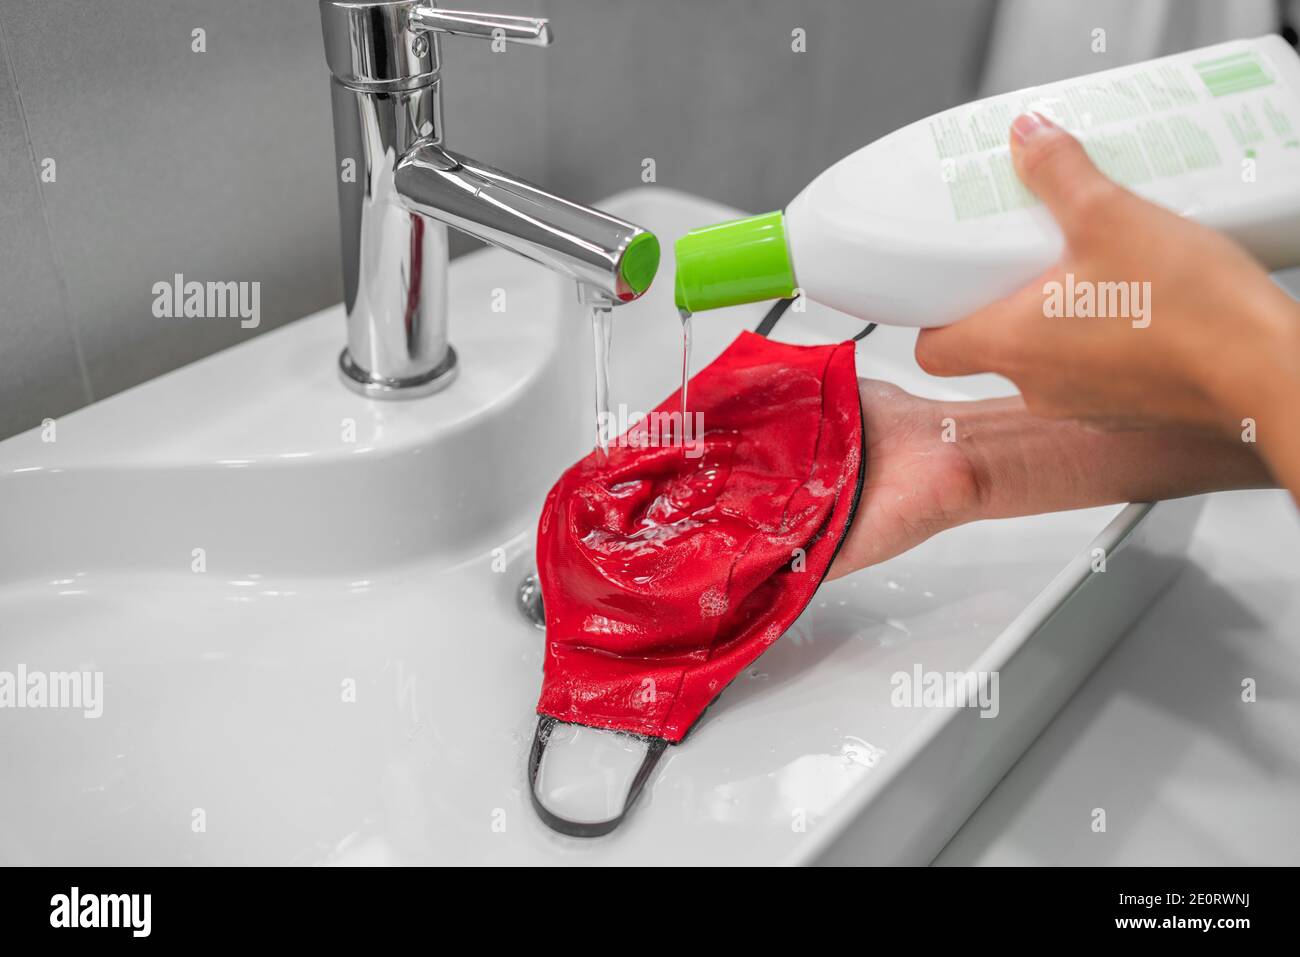 Wasch Gesichtsmaske zu Hause Waschbecken mit flüssigen Waschseife von Hand. Wiederverwendbare Stoffmasken müssen gereinigt werden Stockfoto